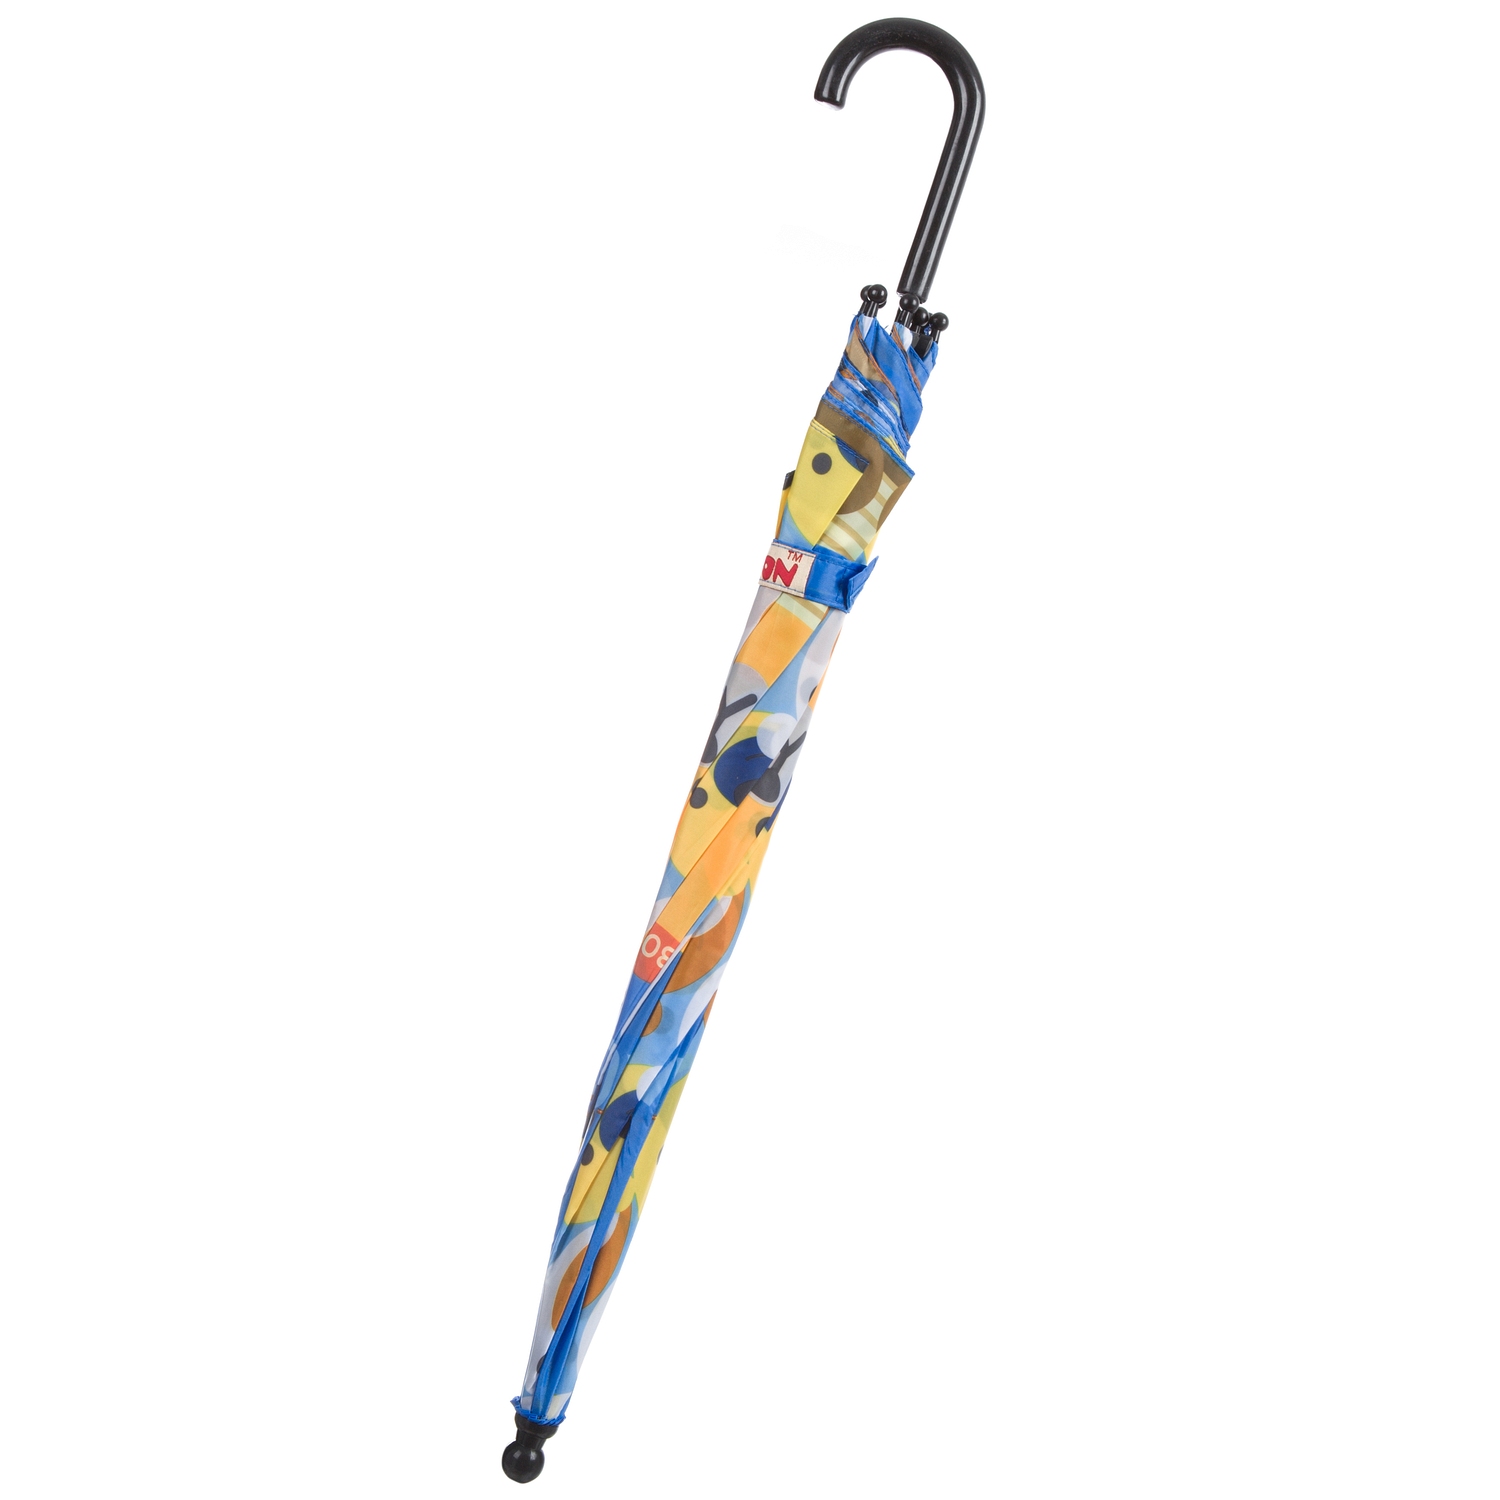 Автоматический детский зонт Bondibon Мишки, синий с коричневым, 19 см